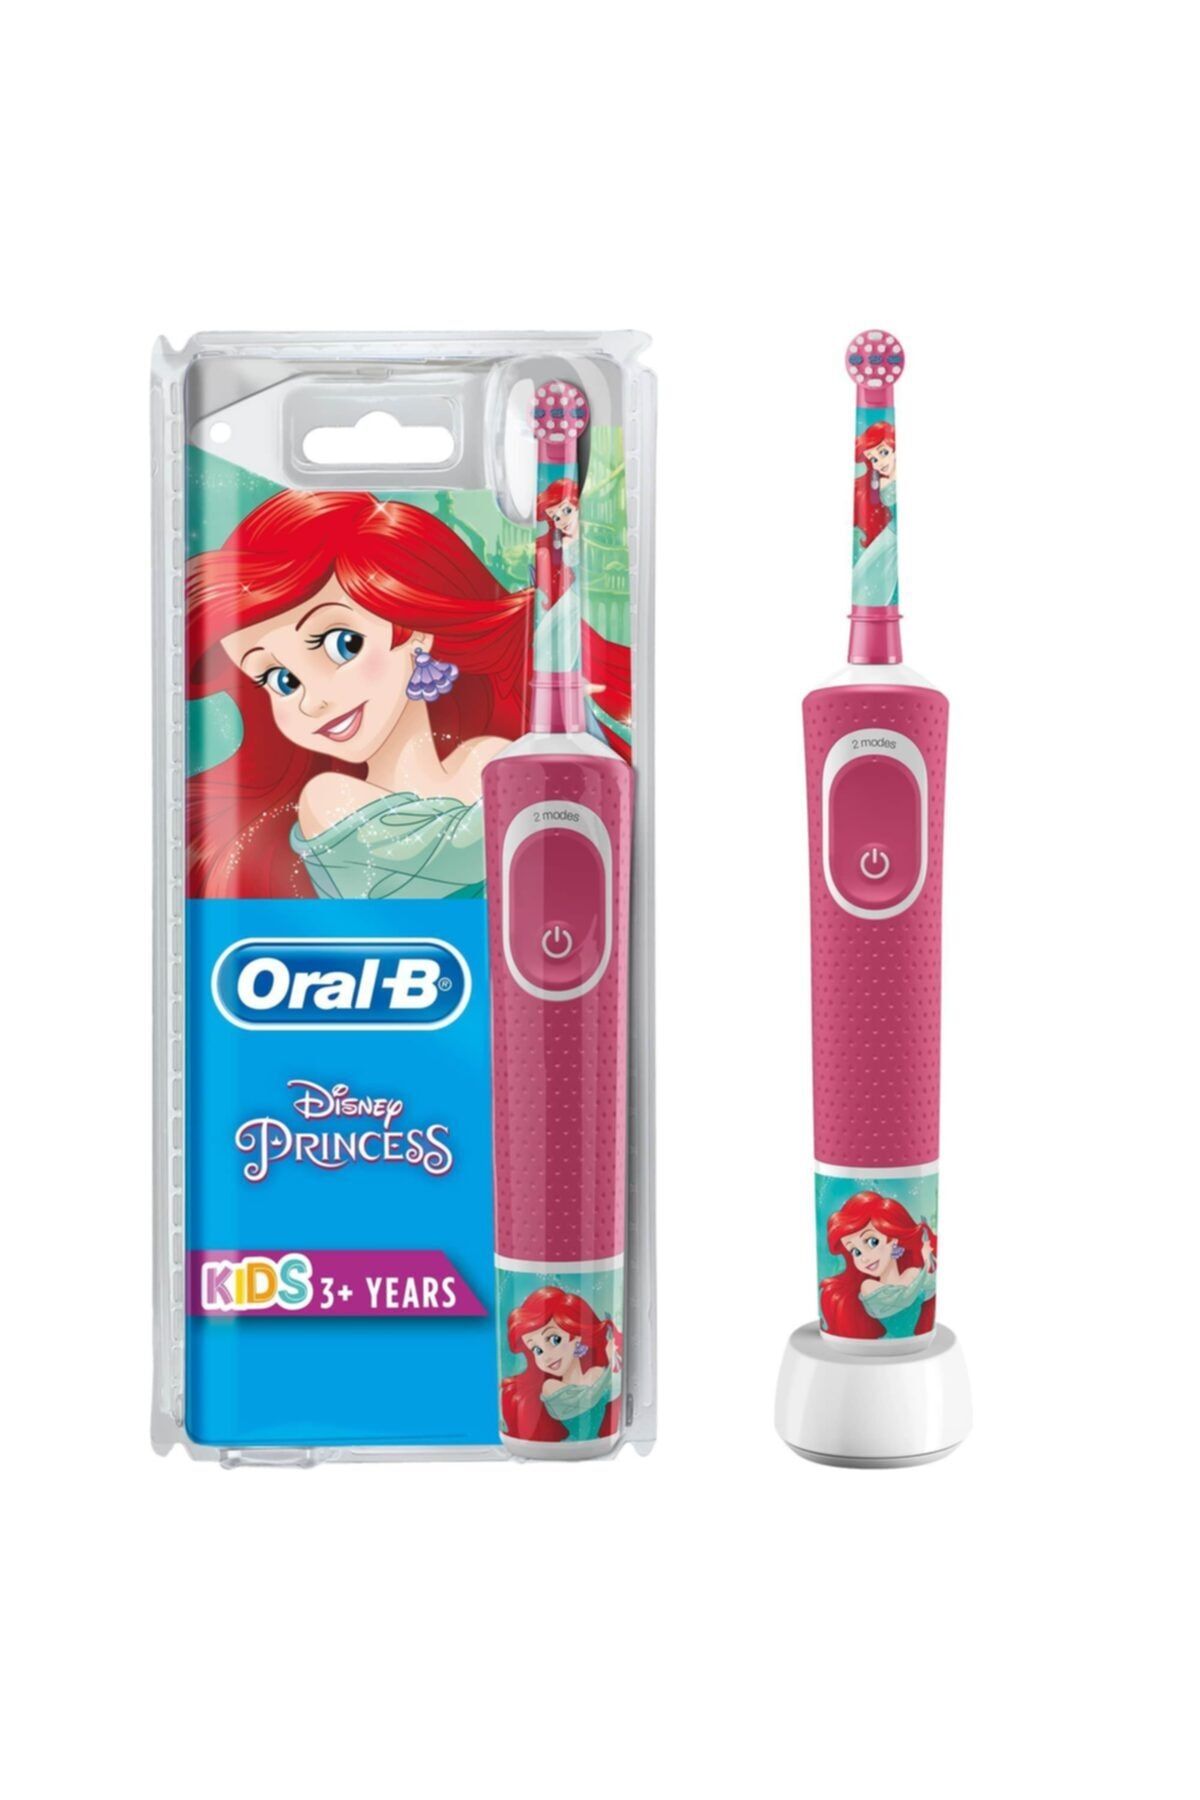 Oral-B Princess Özel Seri Çocuklar Için Şarj Edilebilir Diş Fırçası